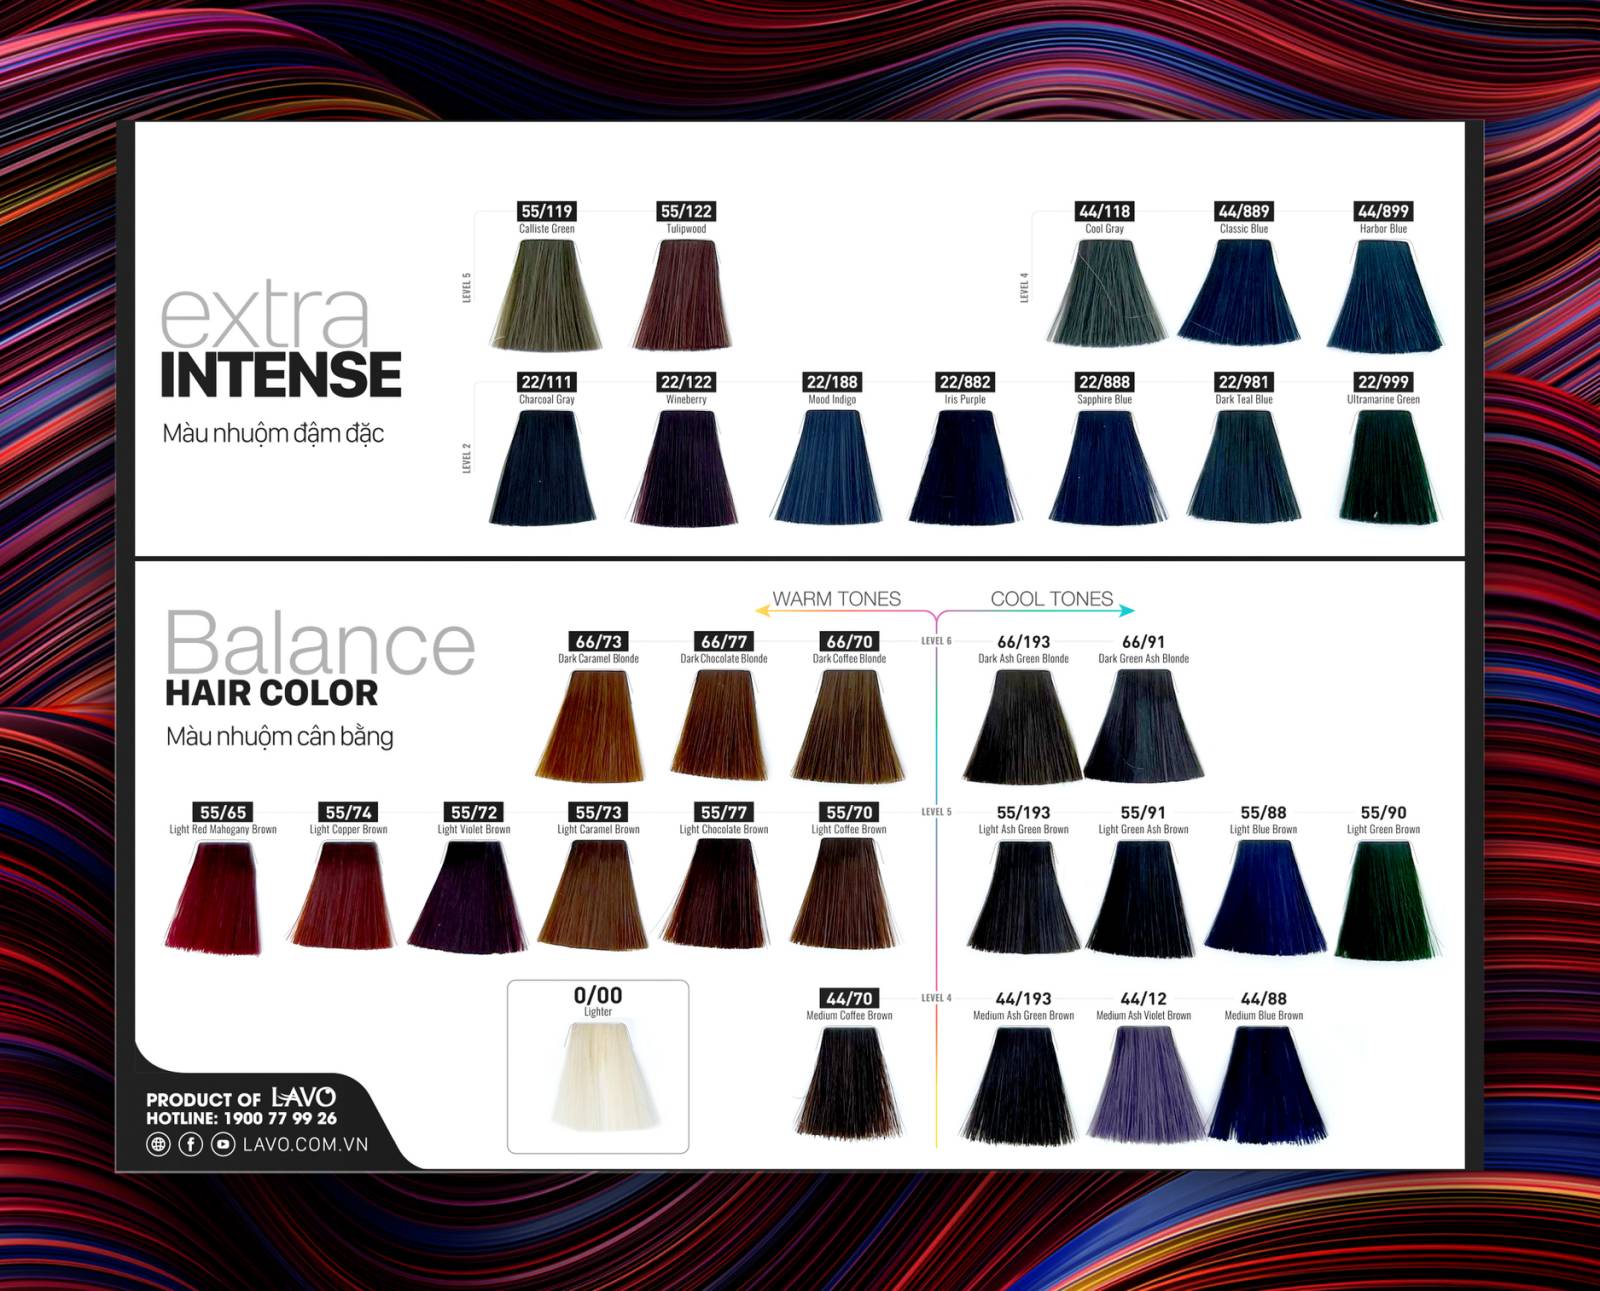 Nhuộm cân bằng Lavox Nano Complex đa dạng màu sắc cho bạn lựa chọn